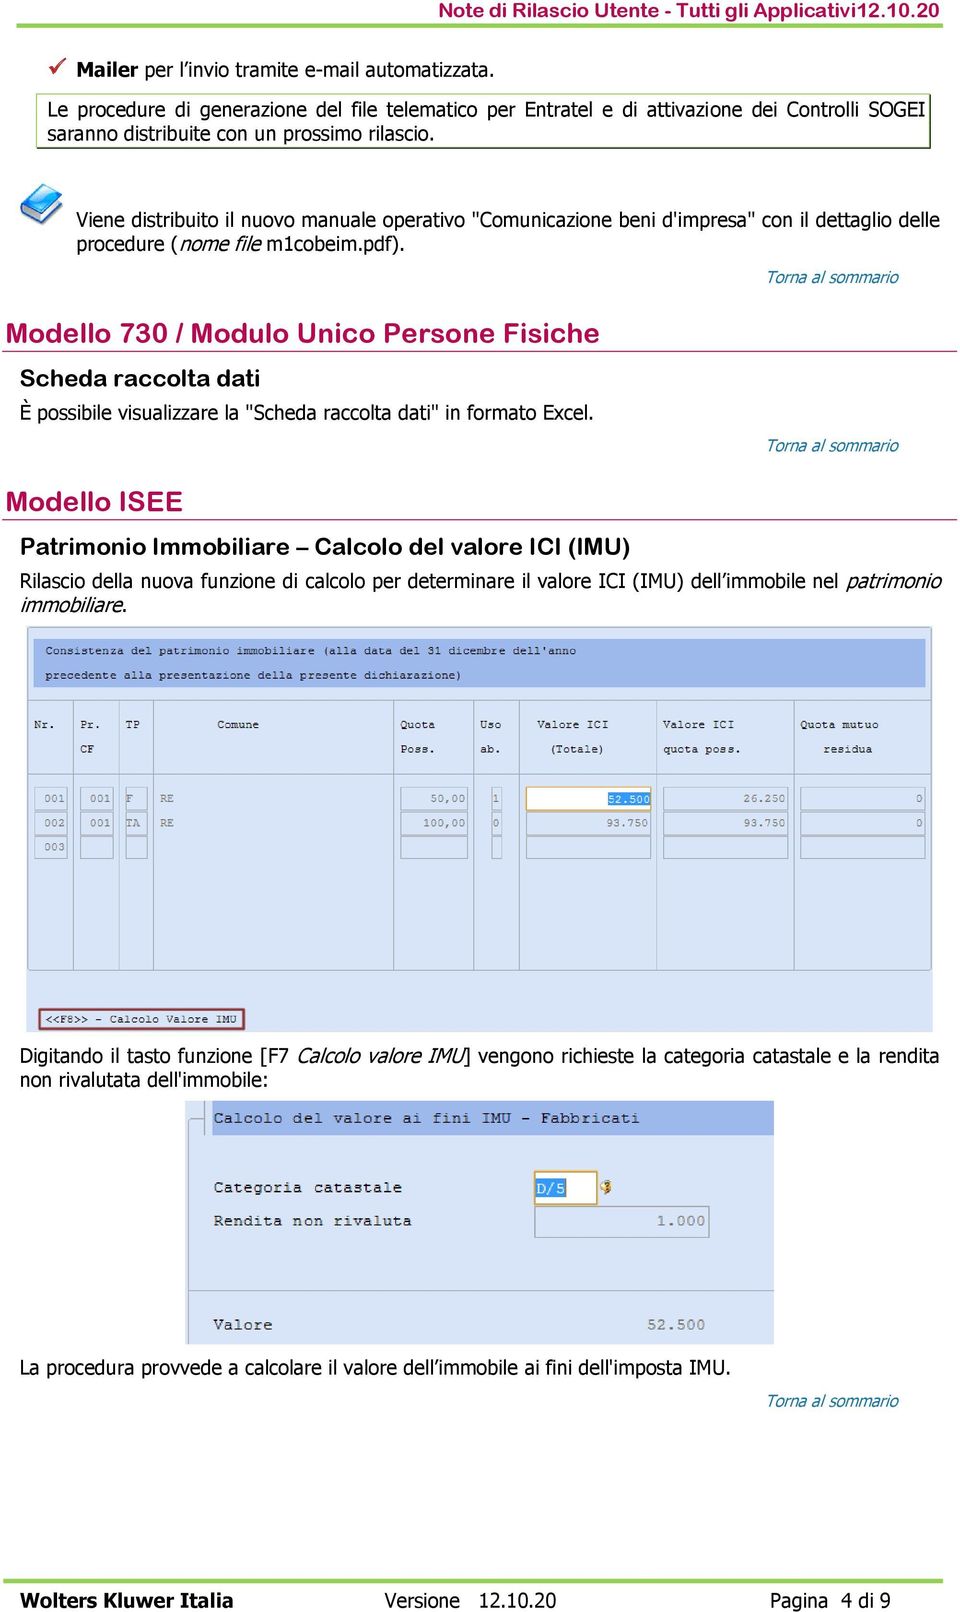 Modello 730 / Modulo Unico Persone Fisiche Scheda raccolta dati È possibile visualizzare la "Scheda raccolta dati" in formato Excel.